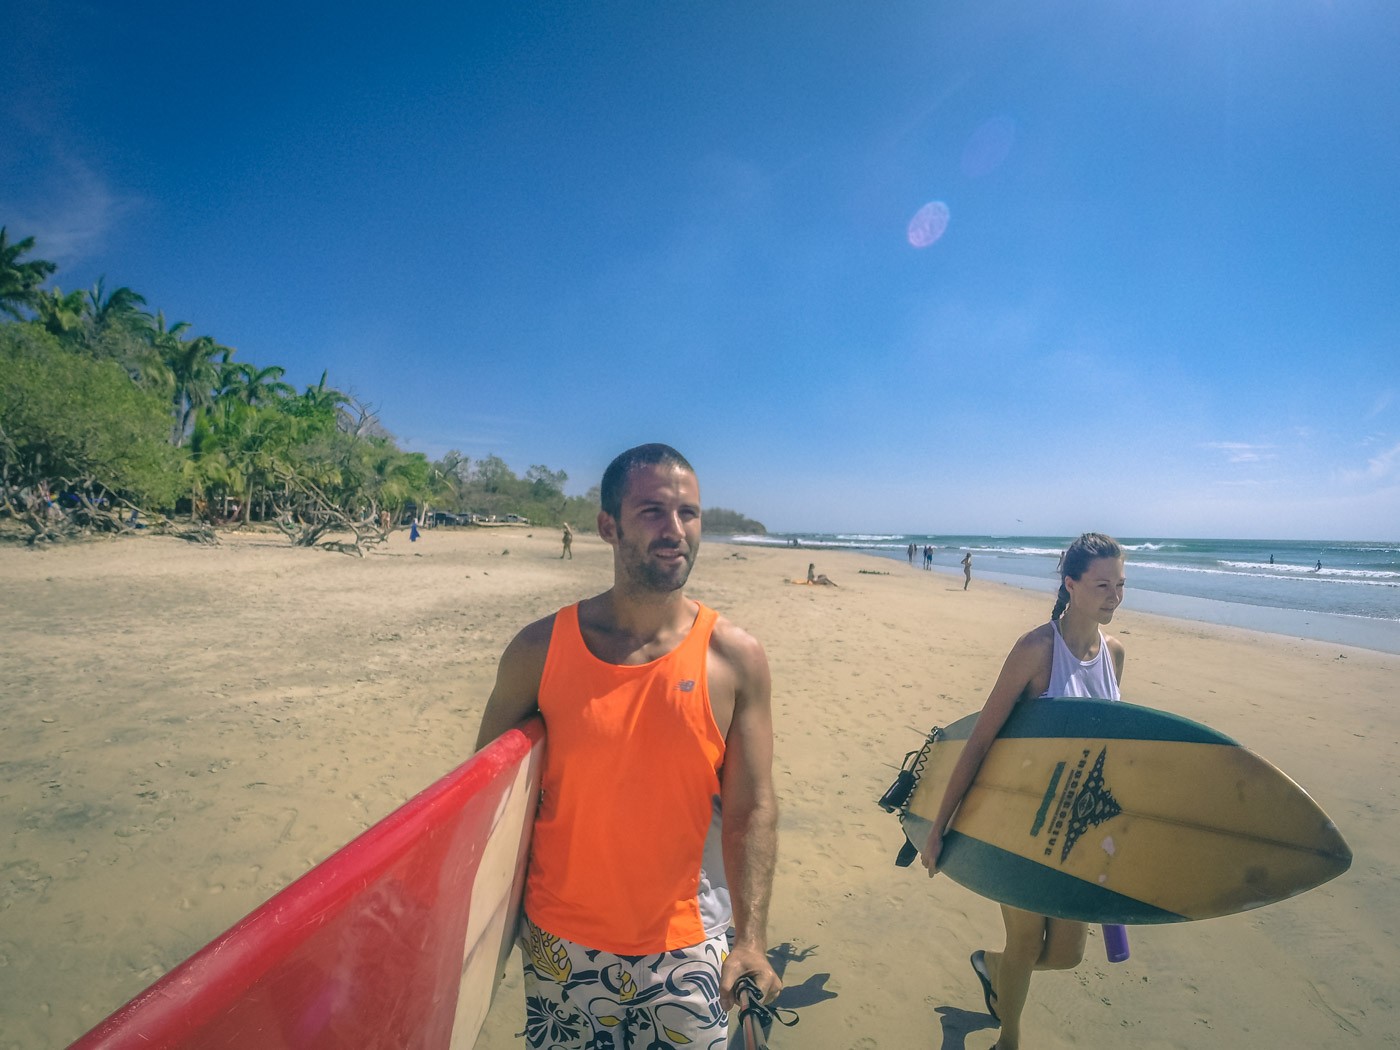 哥斯达黎加行程:麦克斯和奥克萨娜去冲浪。盐湖Avellanas。哥斯达黎加